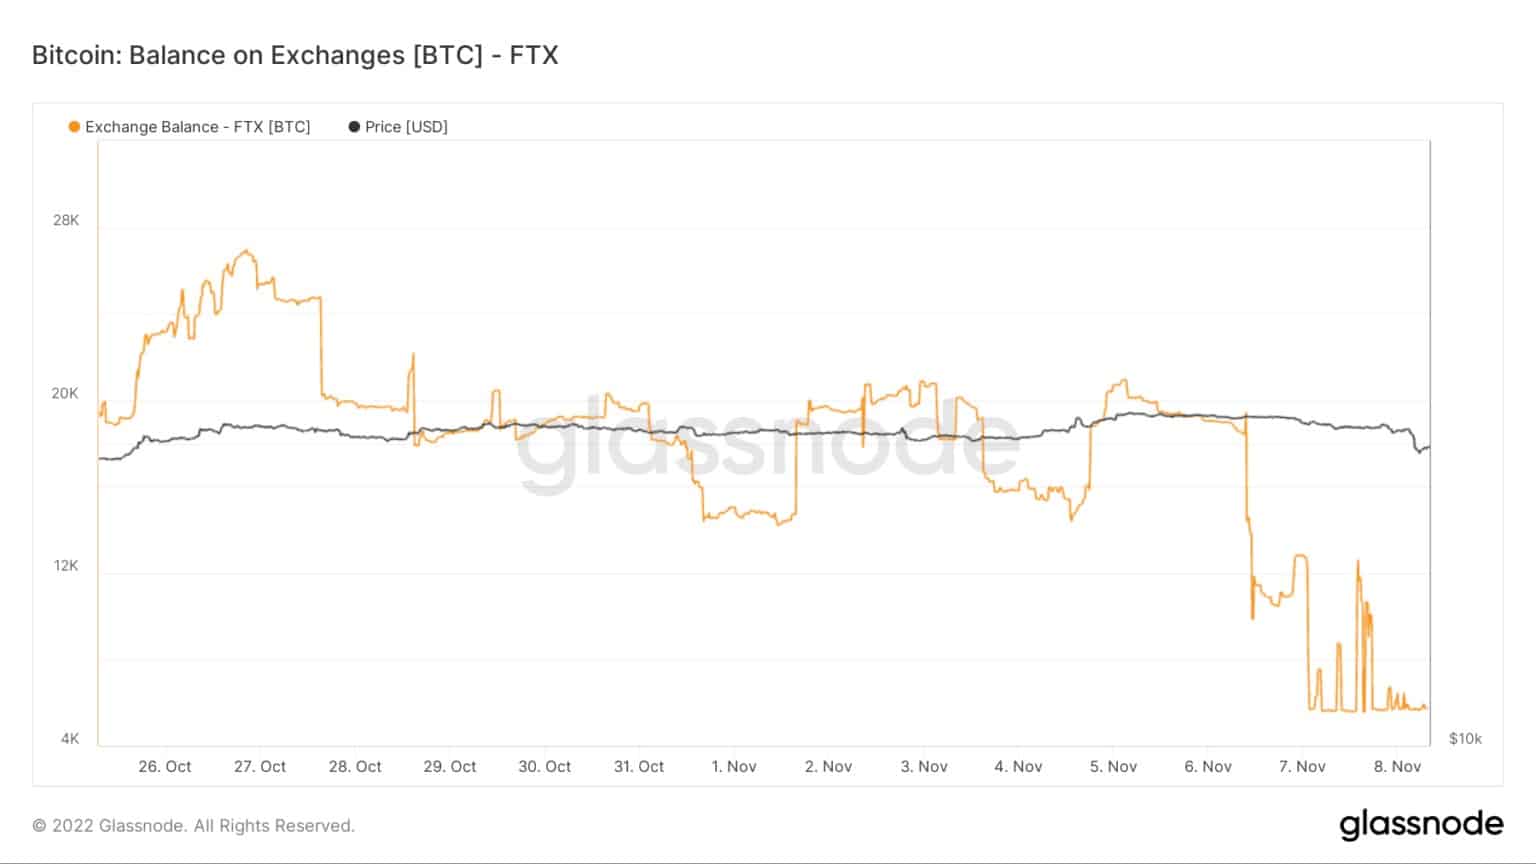 Solde de bitcoins FTX d'octobre à novembre 2022